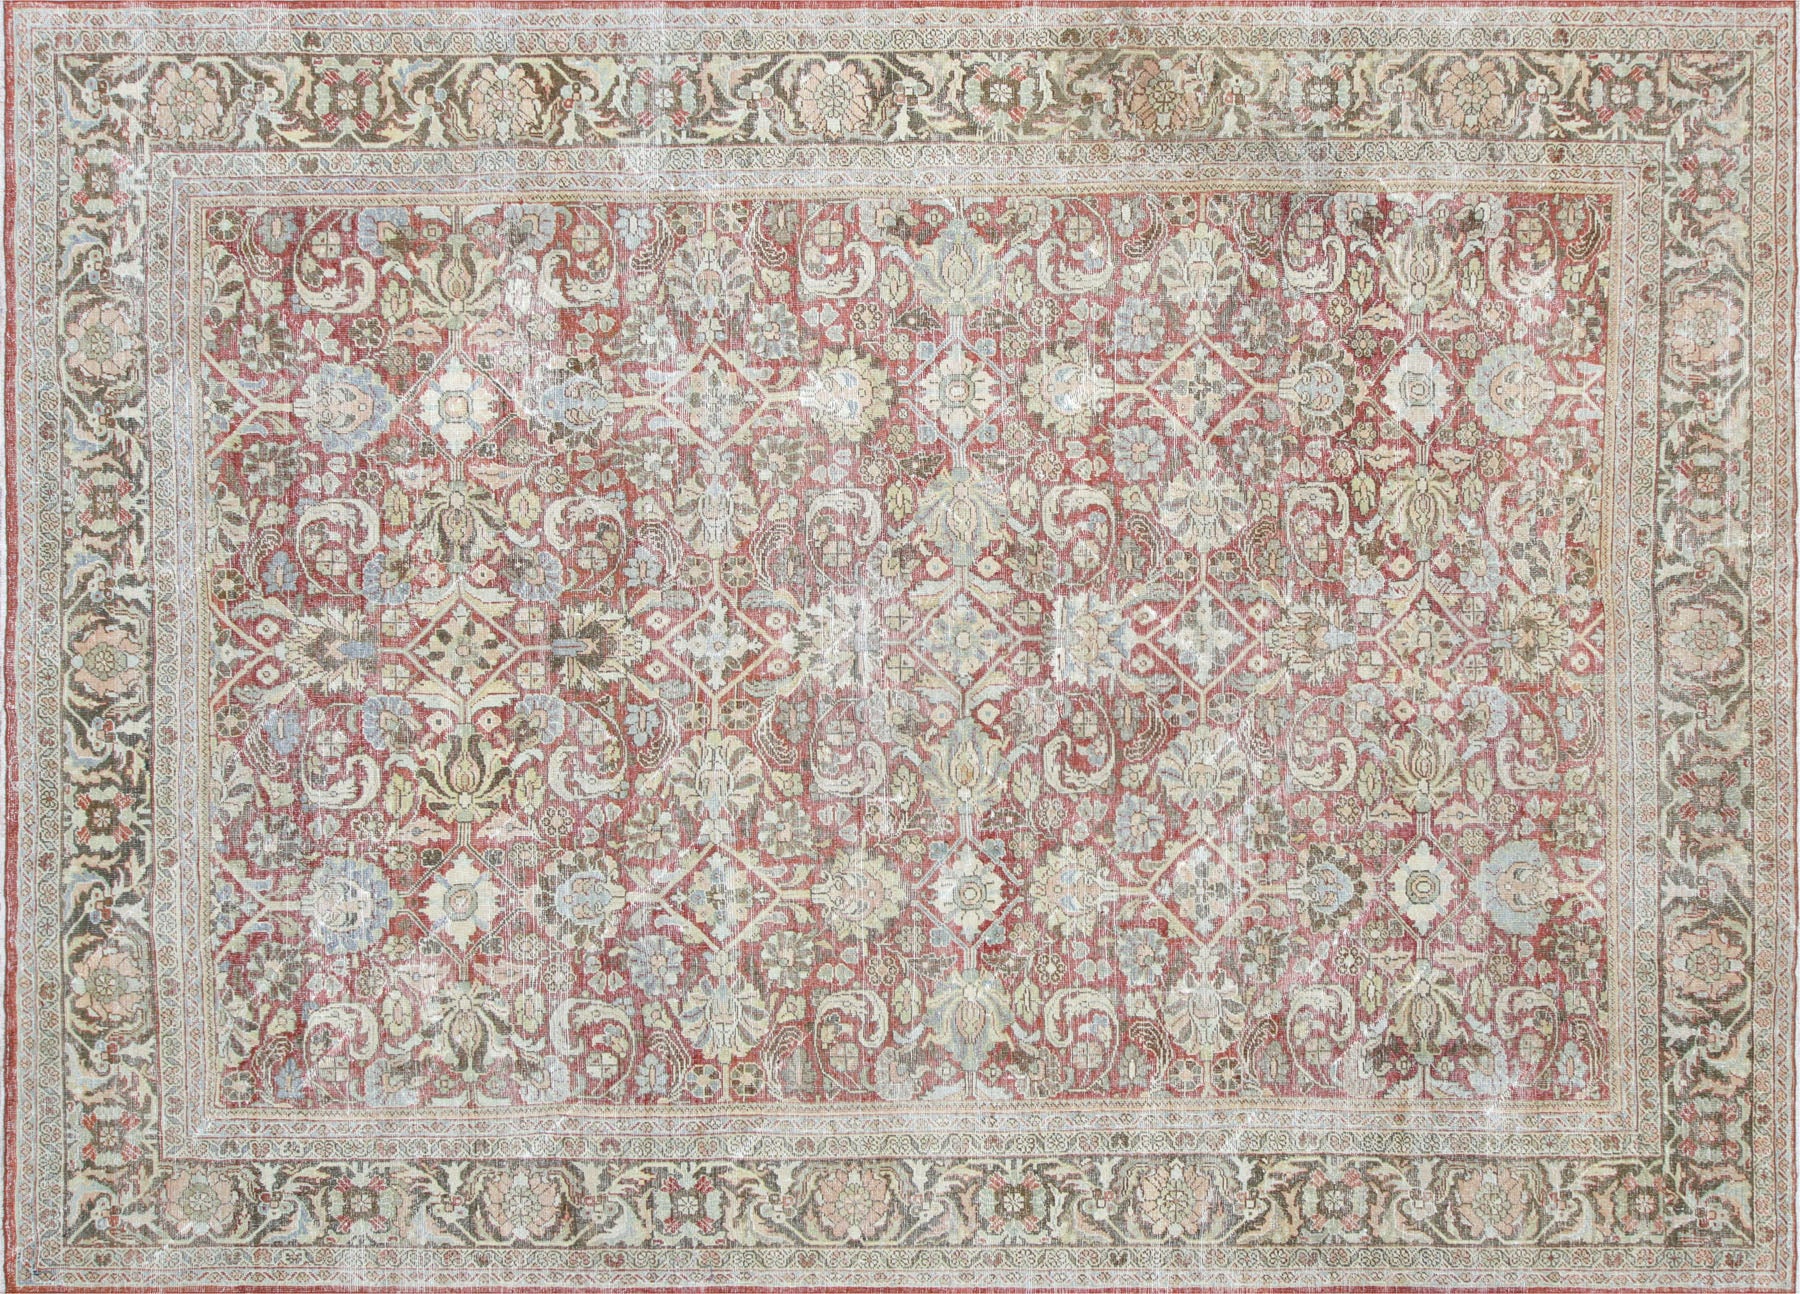 Semi Antique Persian Mahal Carpet - 9' x 12'6"